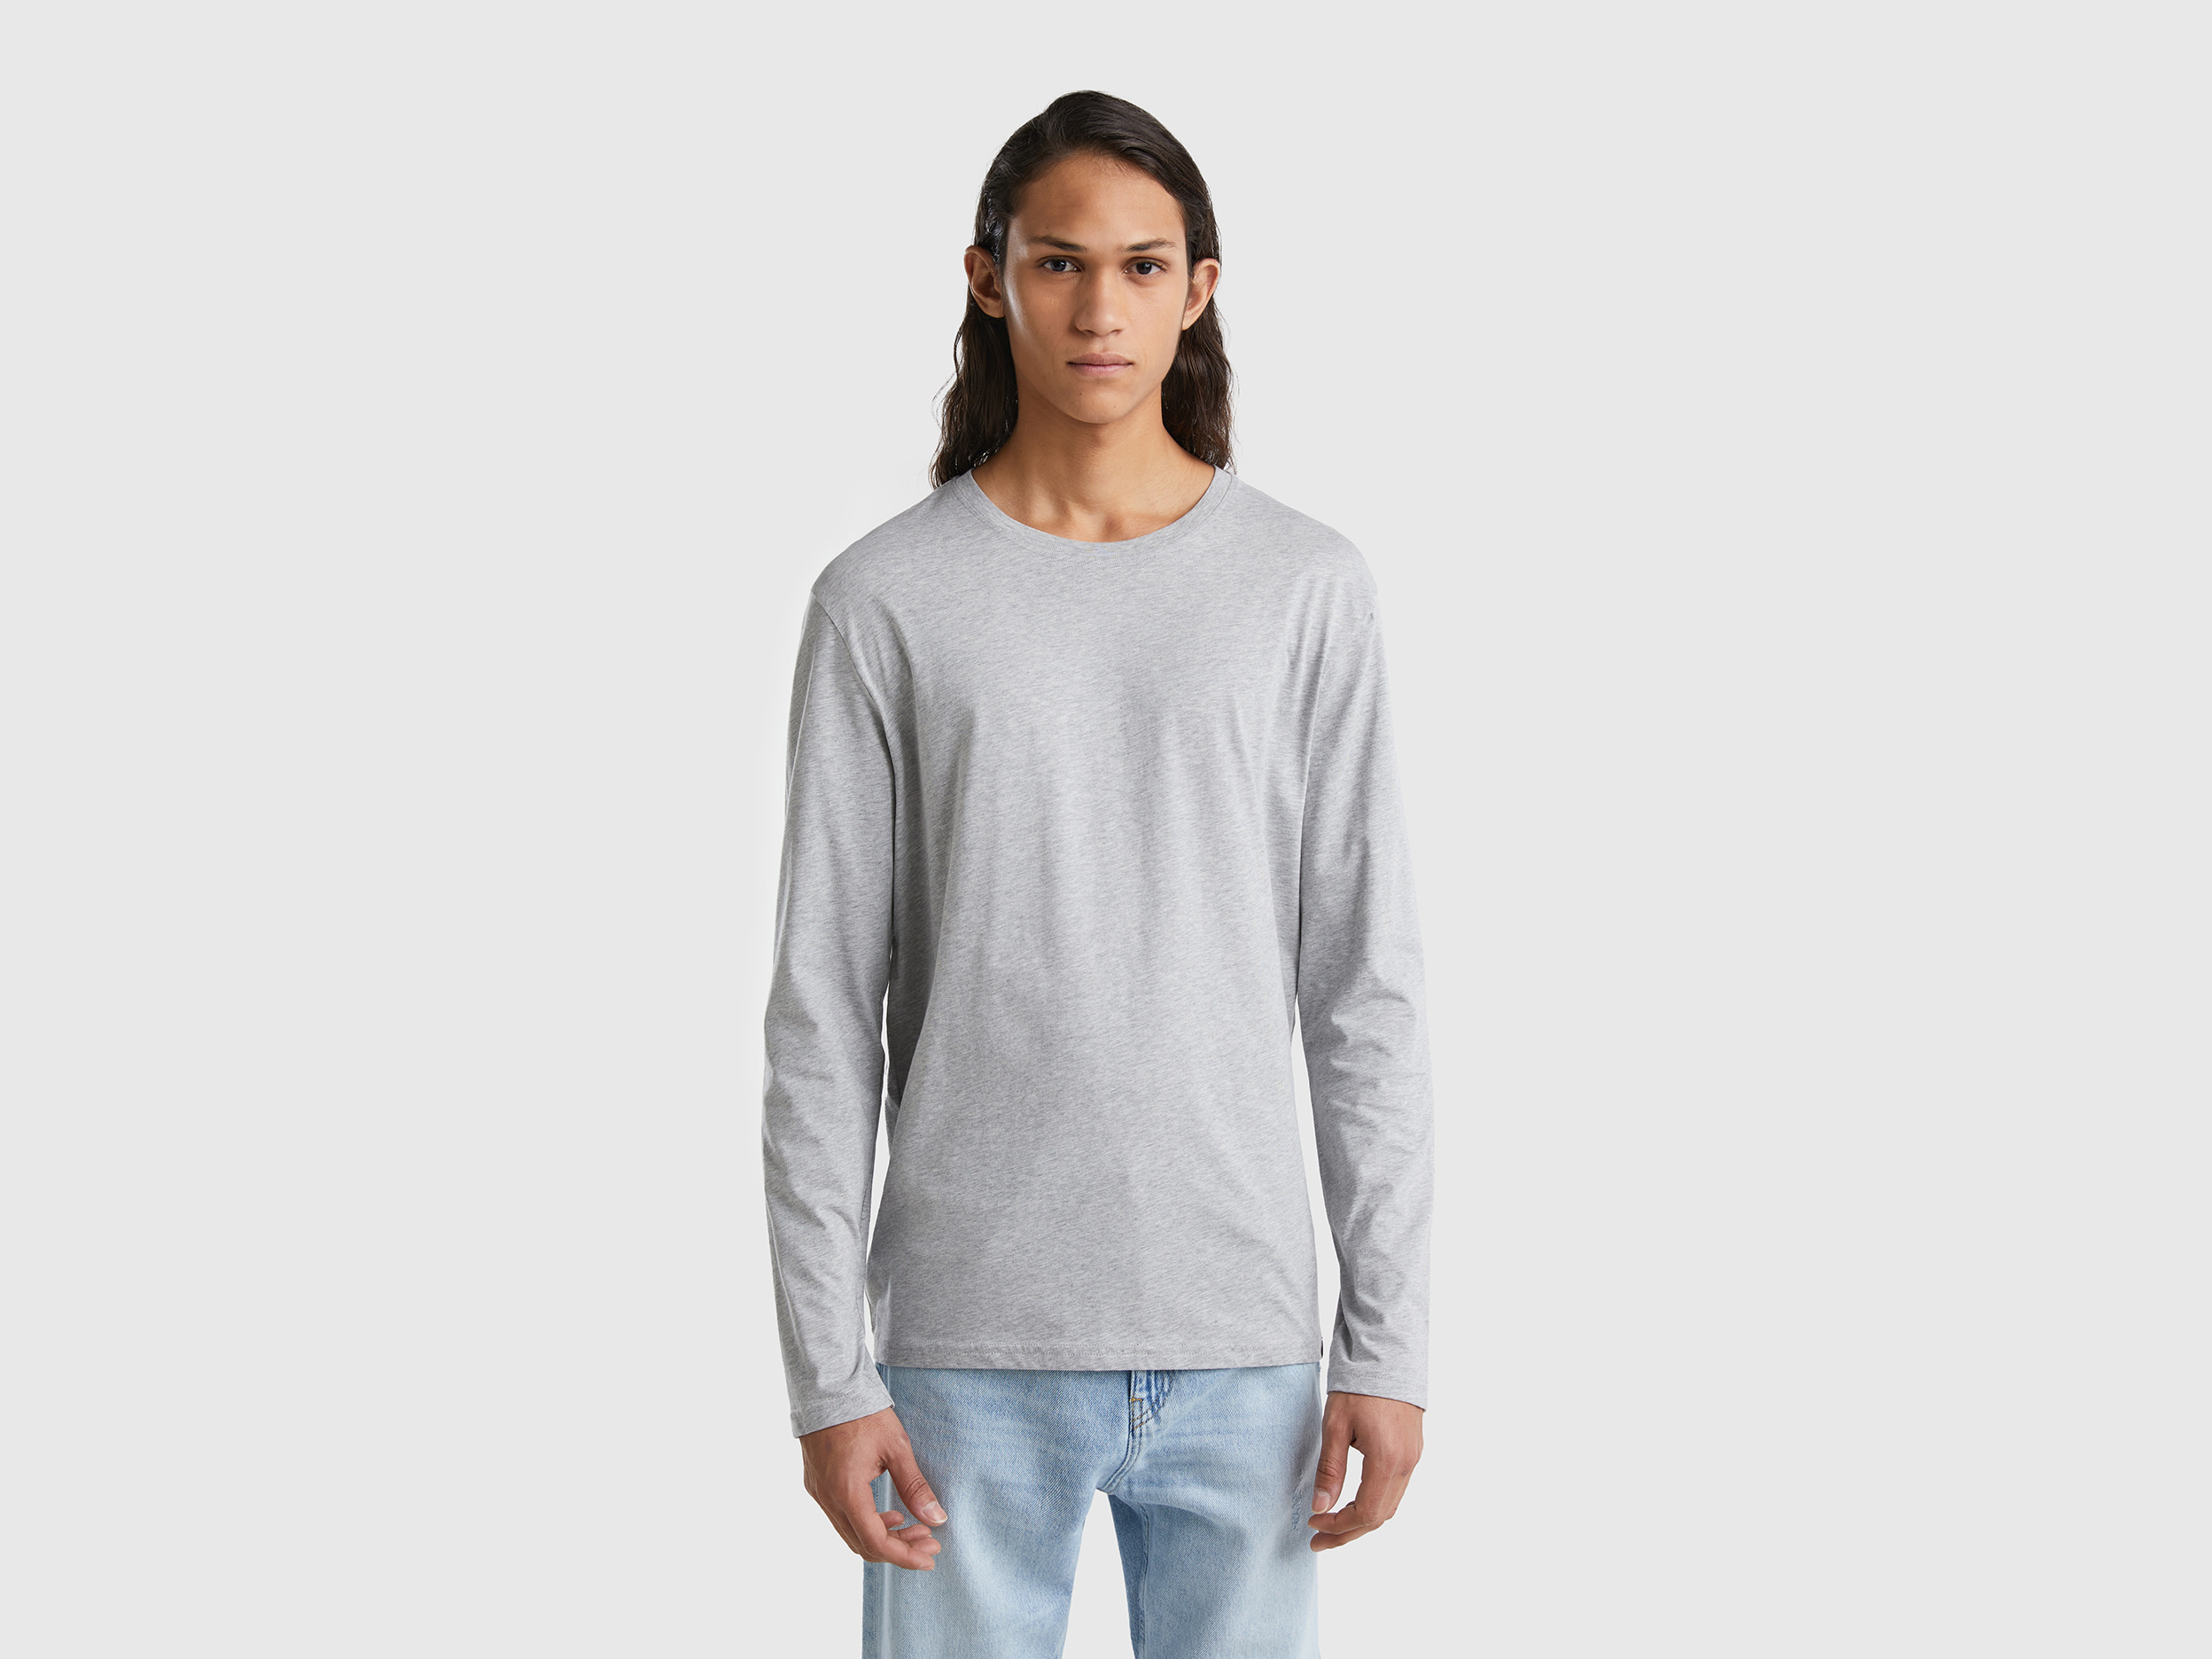 Benetton, Long Sleeve Pure Cotton T-shirt, size XXXL, Light Gray, Men